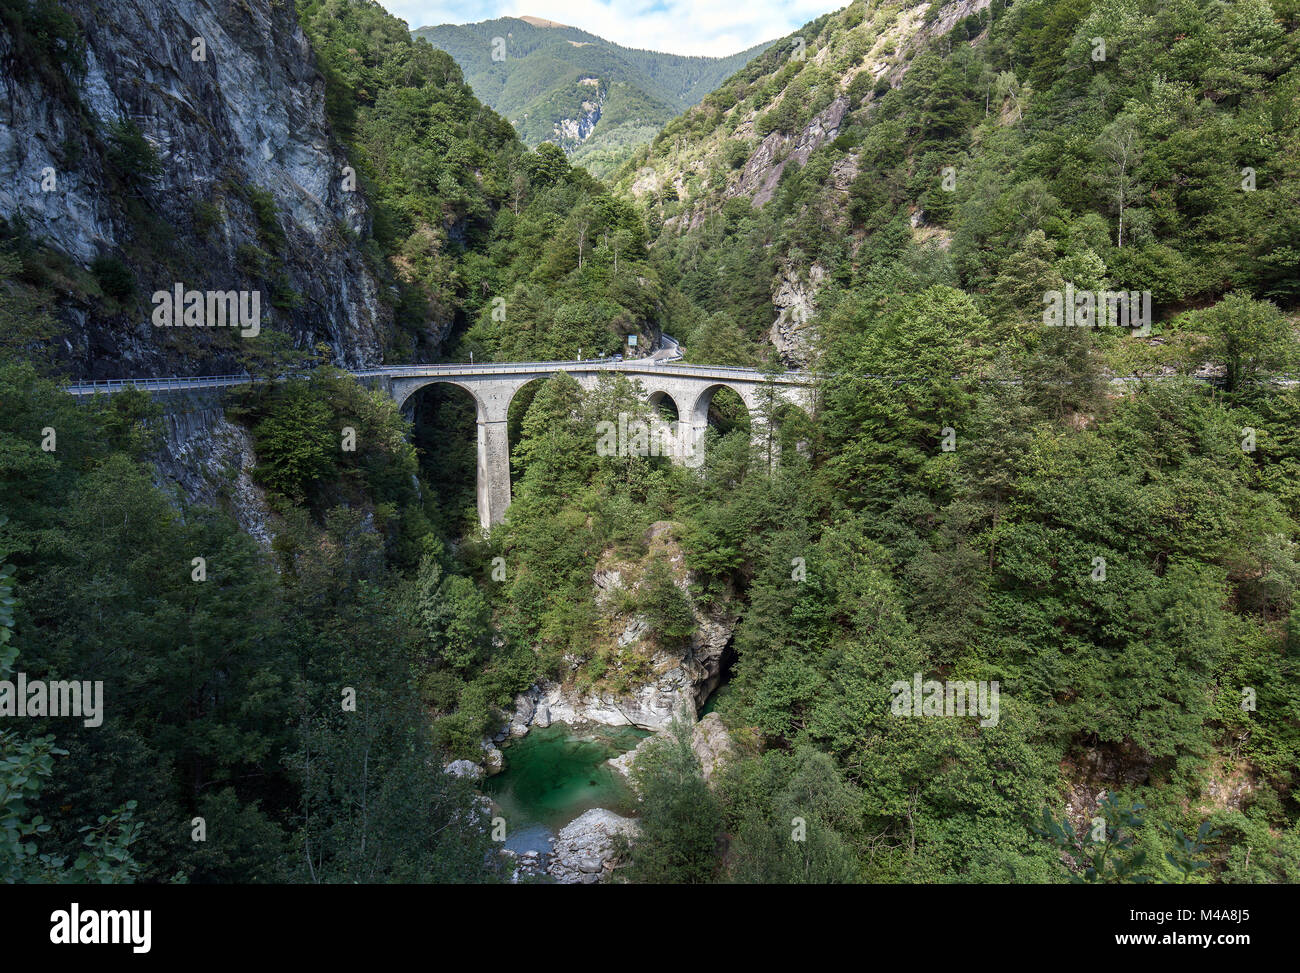 Brücke über den Fluss Ribo, Ponte Oscuro, zwischen Russo und Crana, Onsernonetal, Valle Onsernone, Kanton Tessin, Schweiz Stockfoto